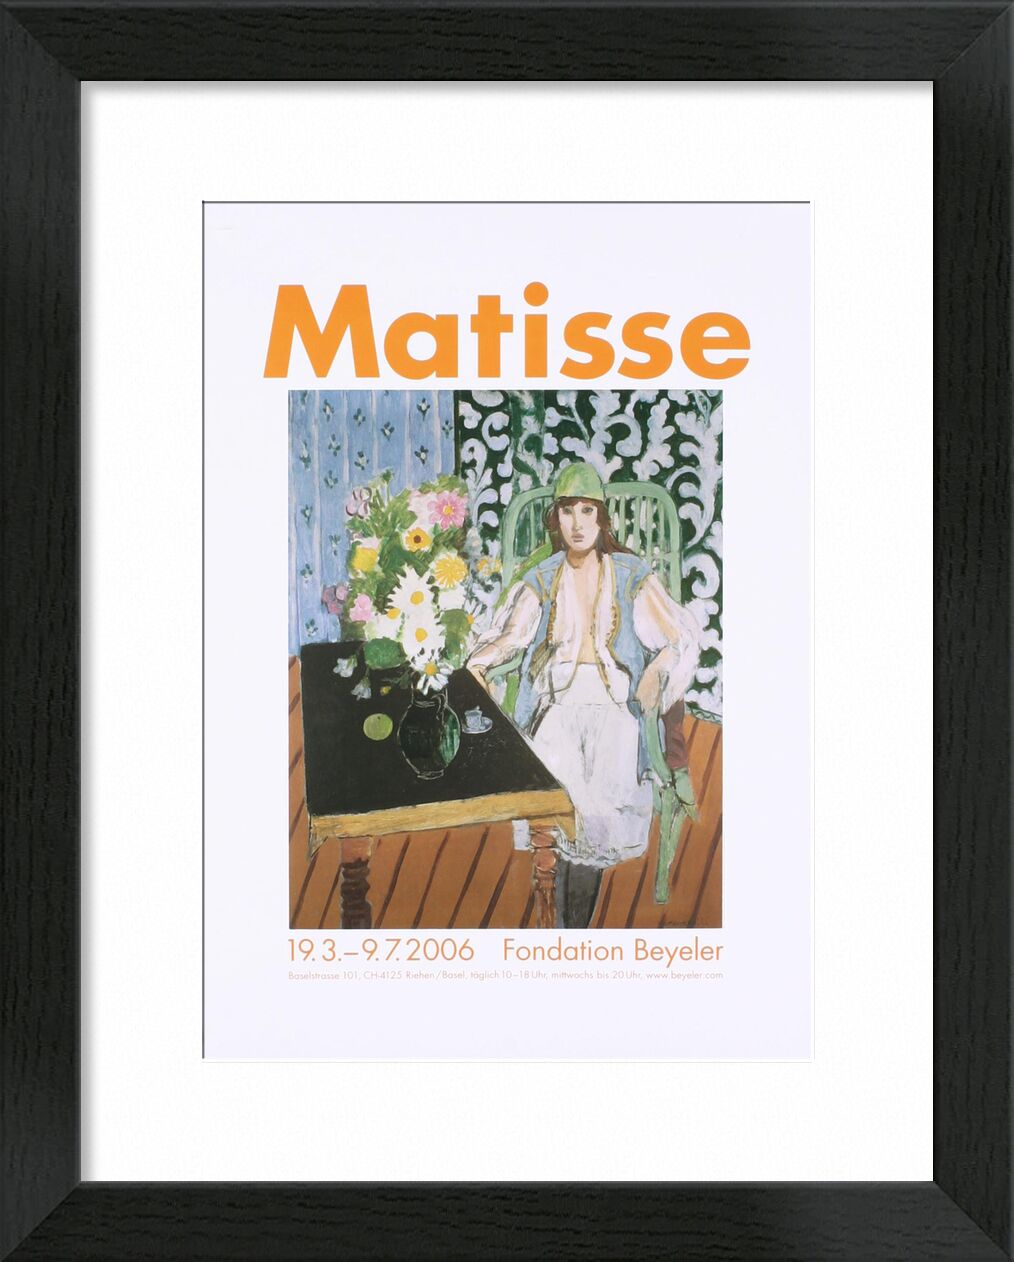 The Black Table - Henri Matisse von Bildende Kunst, Prodi Art, Matisse, Tabelle, Kochen, Frau, Hut, Blumen